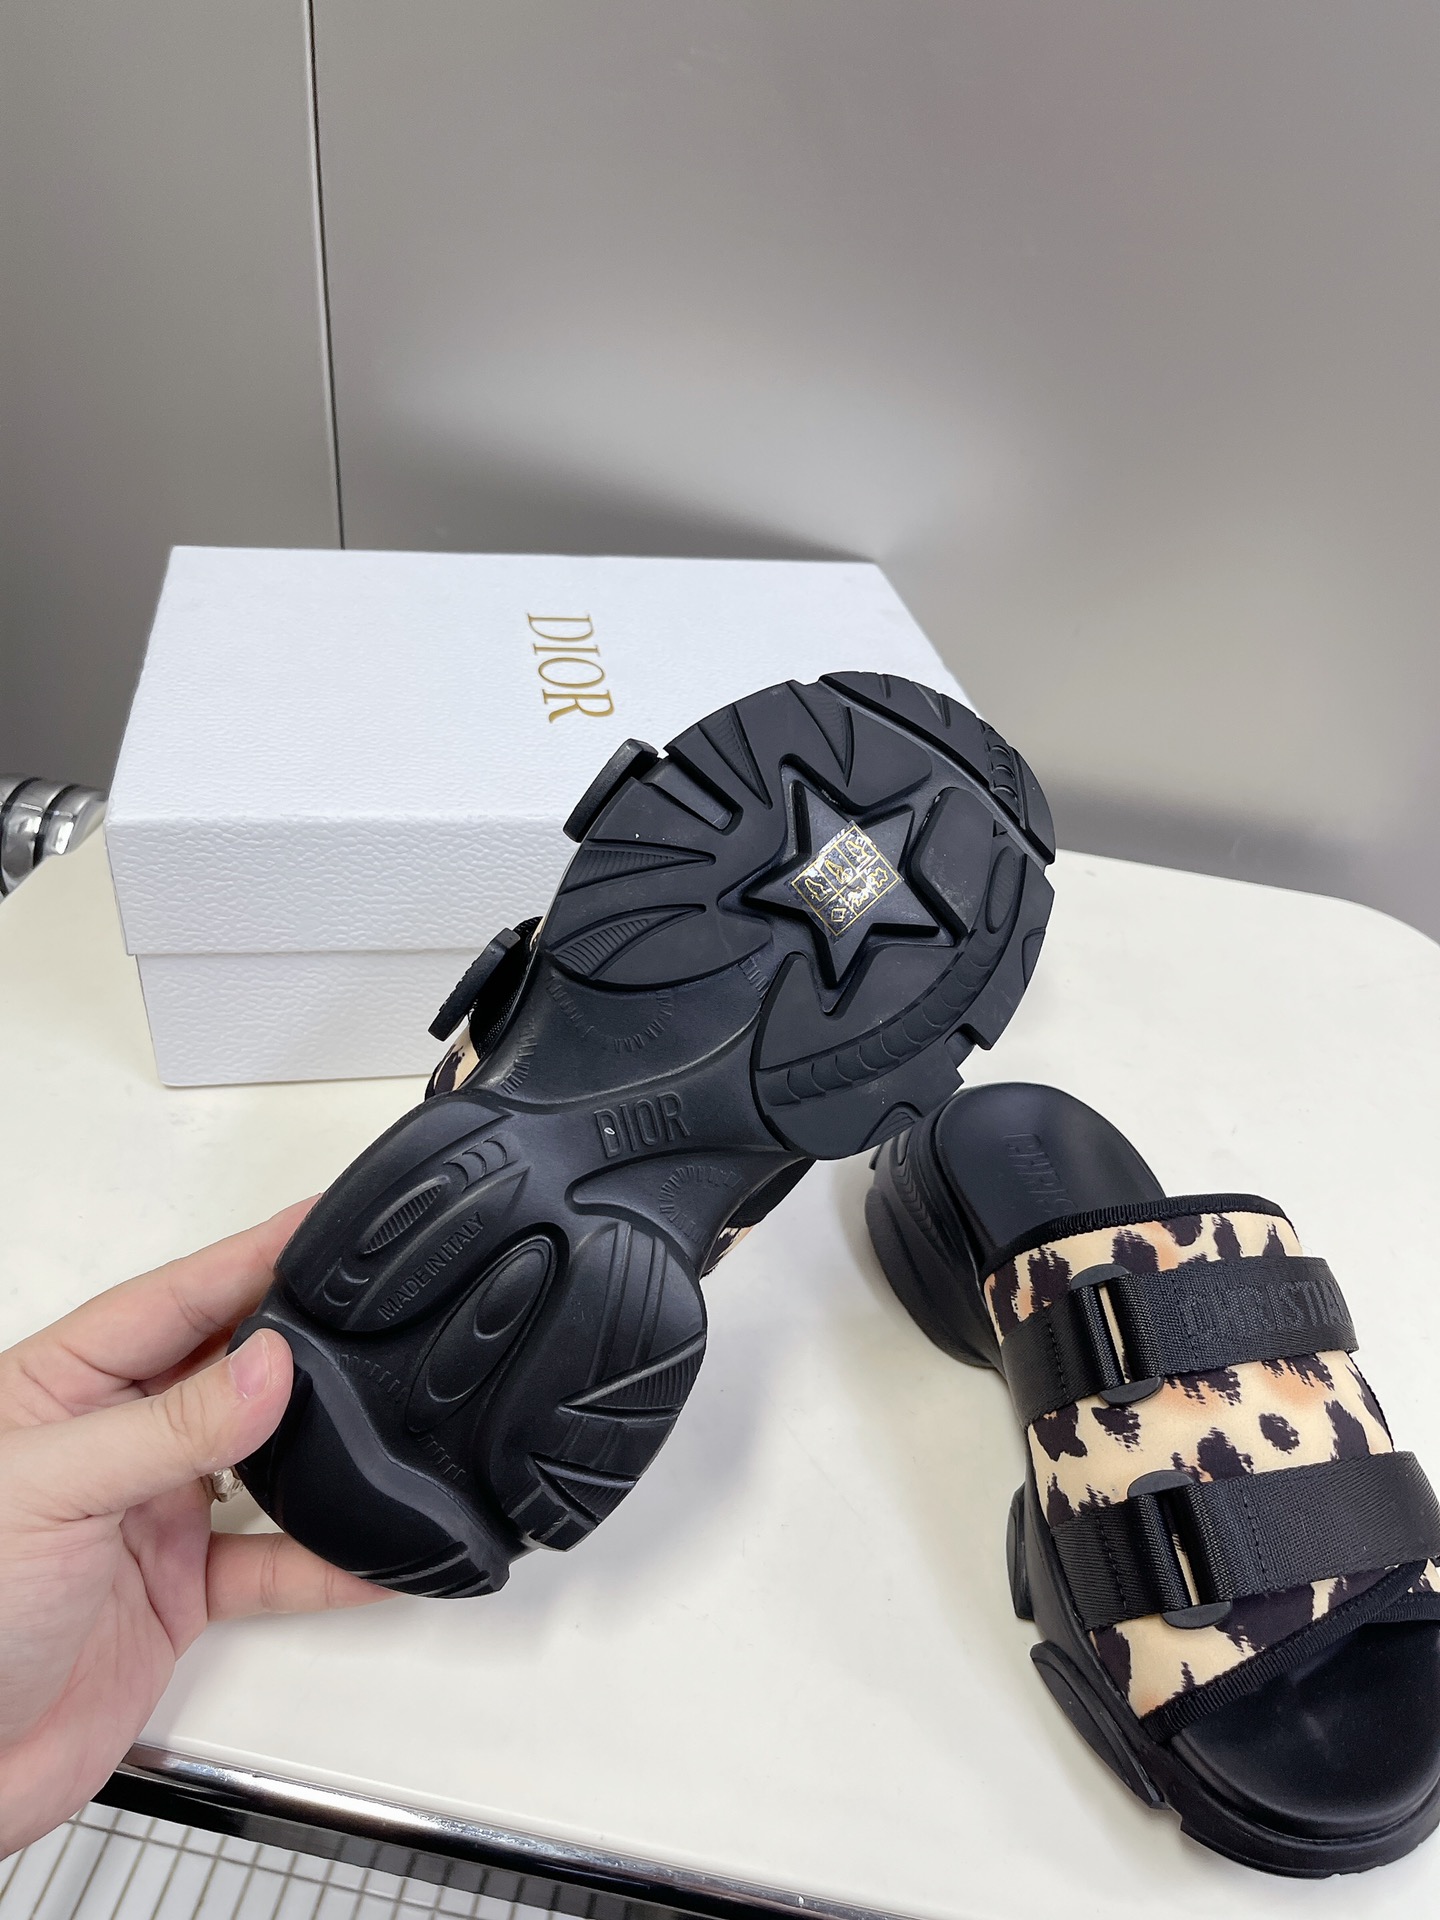 Dior迪奥经典凉拖鞋系列全新色系市面最高版本原版复刻一比一材料定制设计理念凉鞋加运动鞋元素搭配组合️款